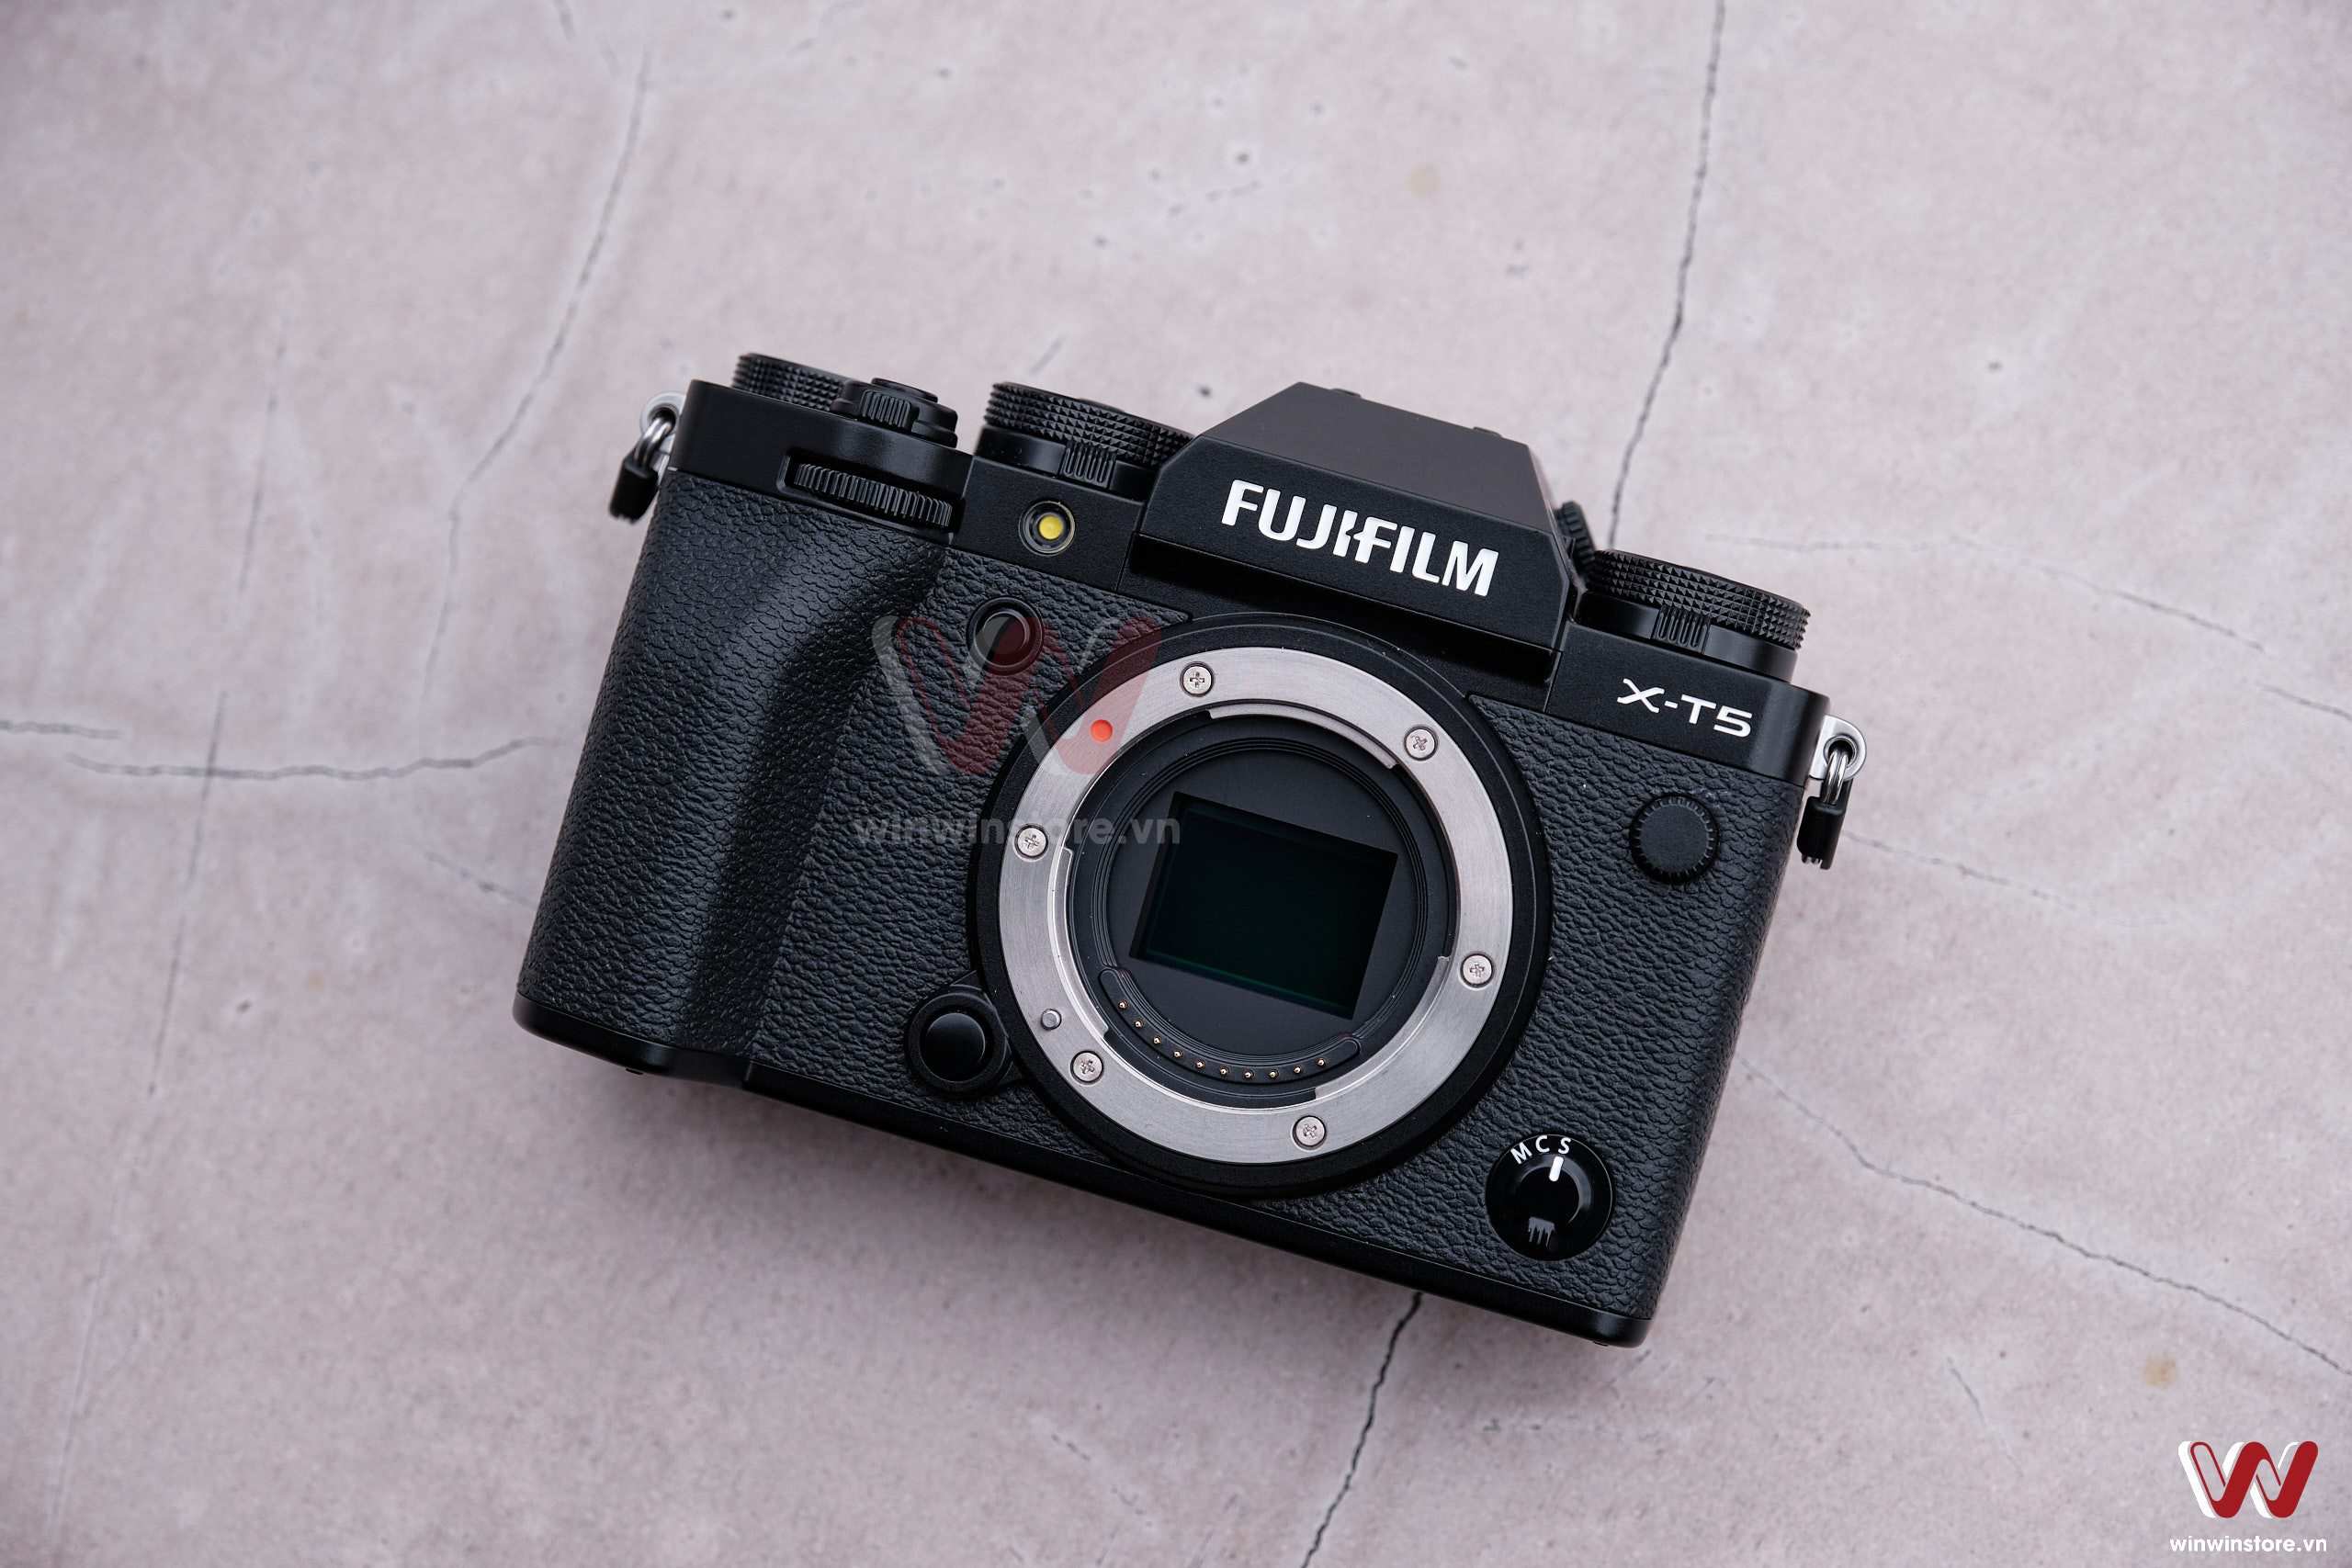 Trên tay máy ảnh Fujifilm X-T5: Gọn hơn, xịn hơn và đáng giá hơn rất nhiều